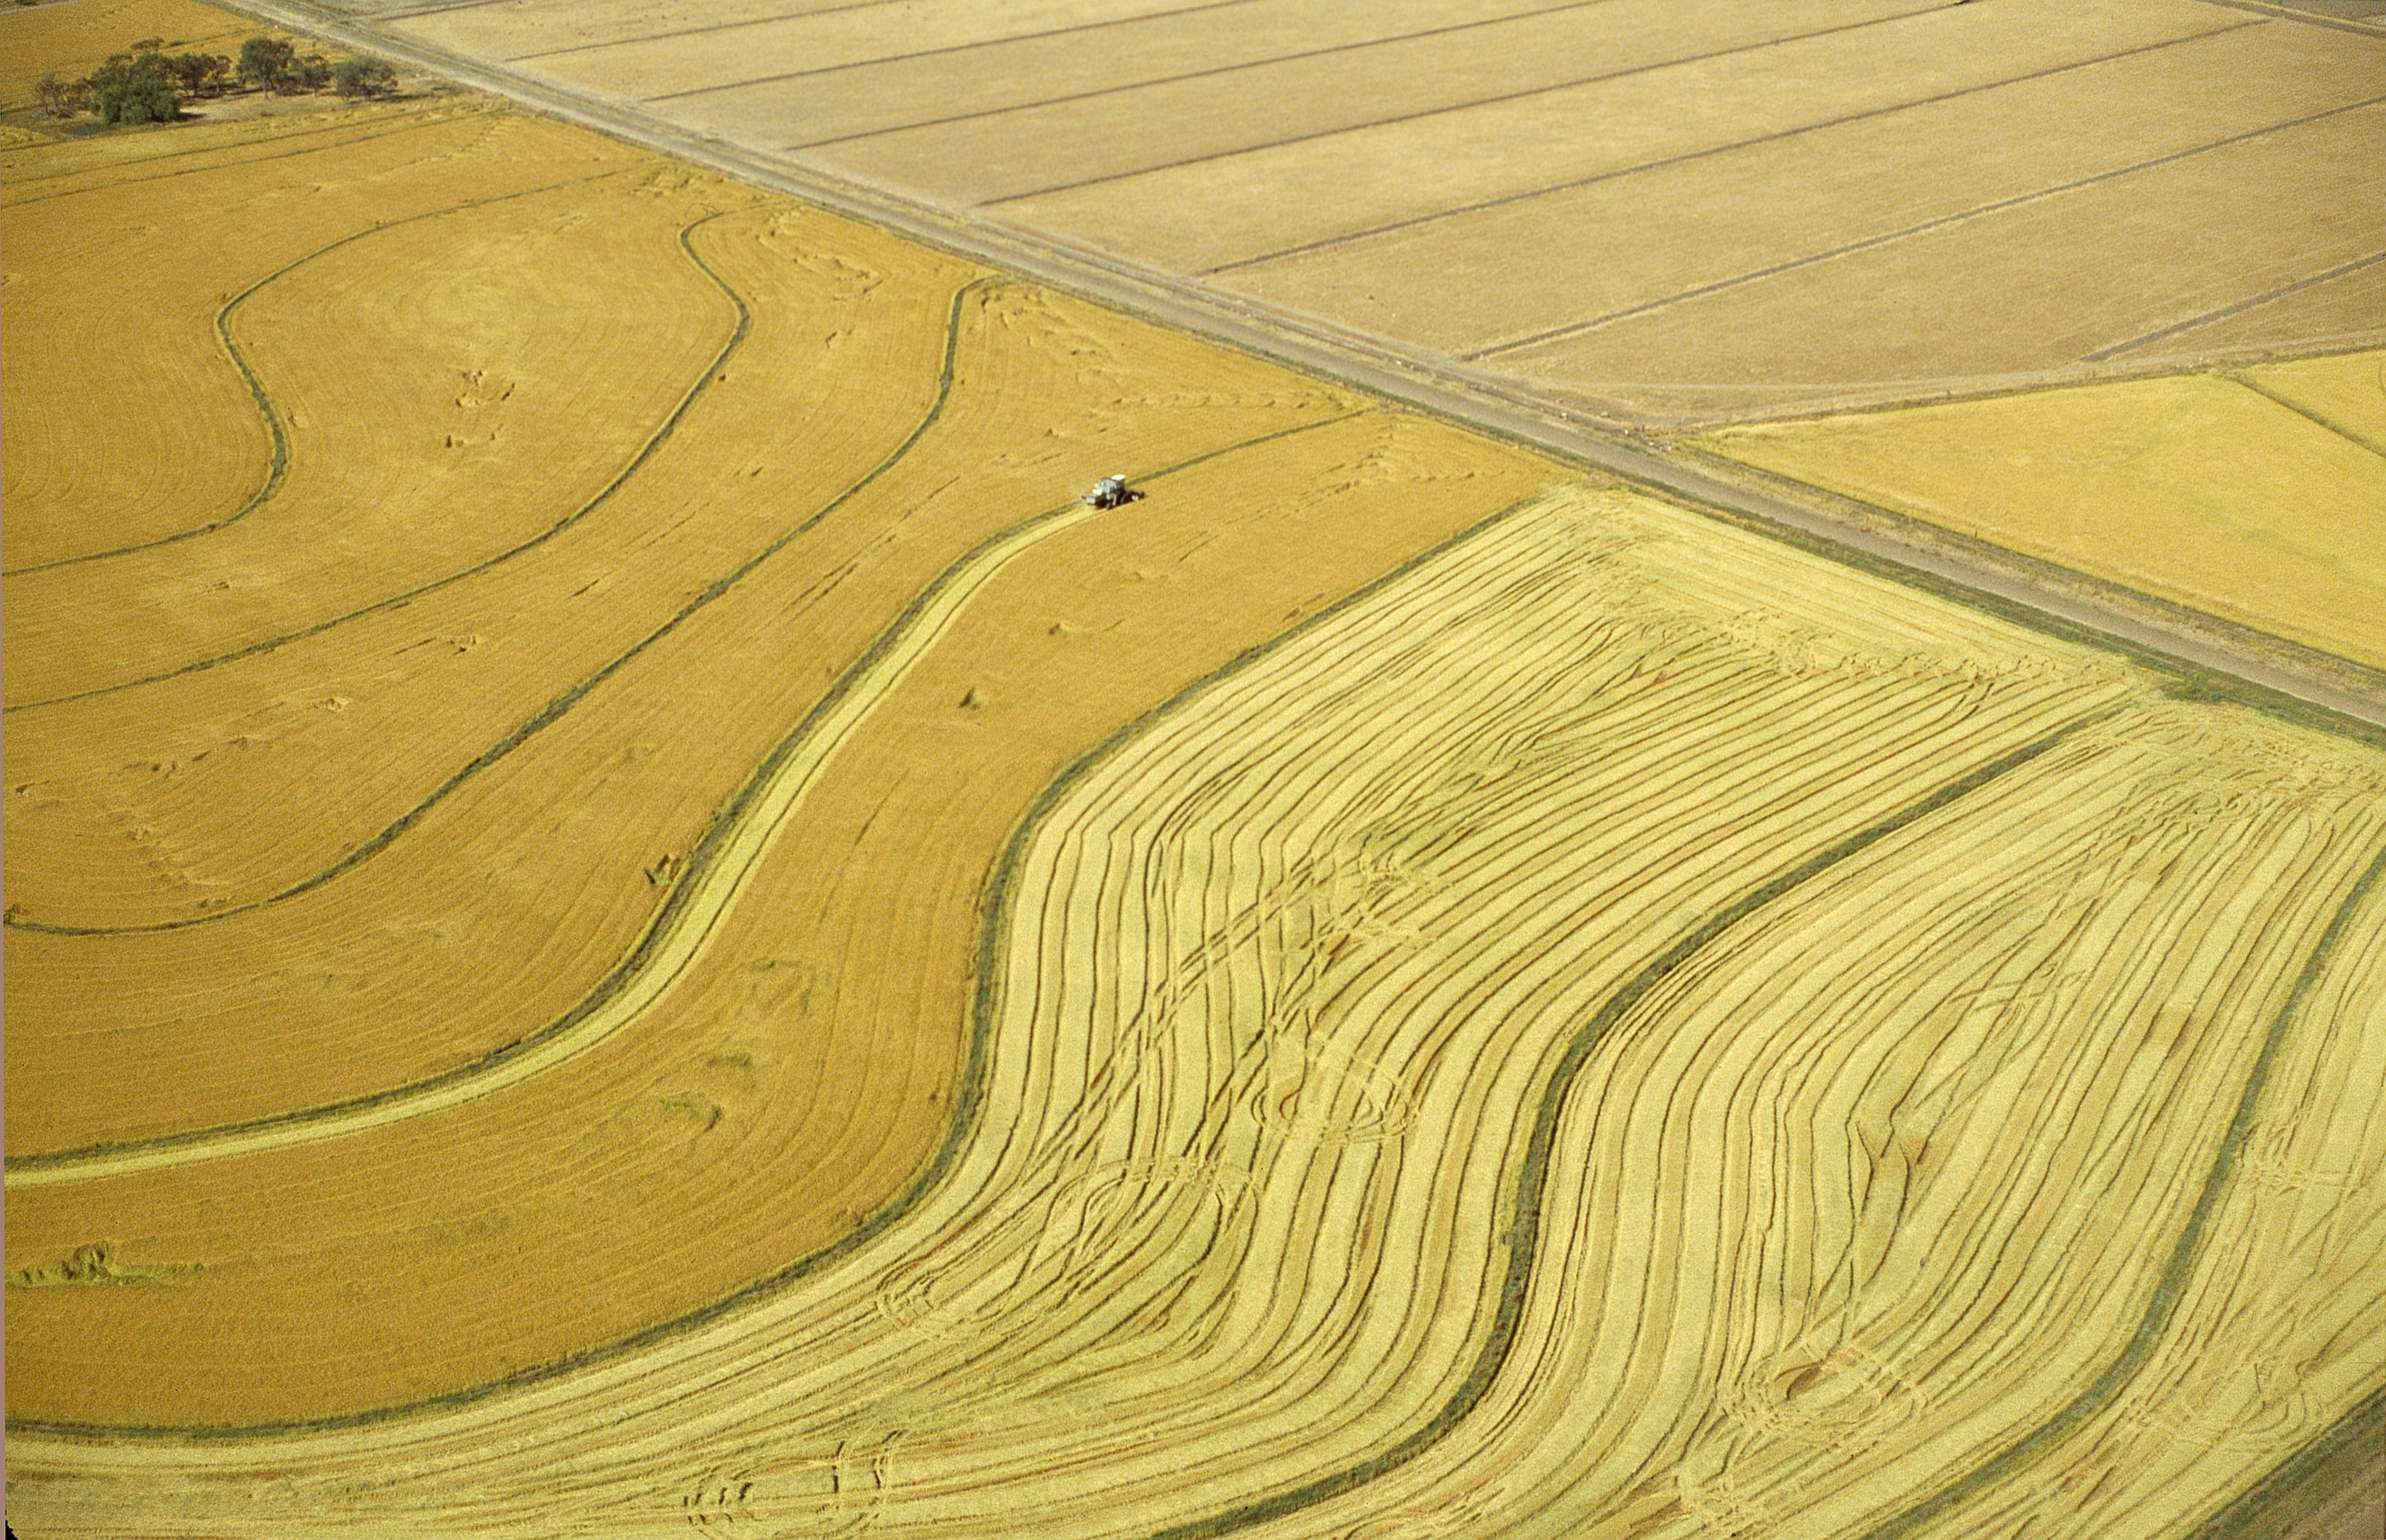 CSIRO ScienceImage 4717 Aerial view of rice harvesting in the Murrumbidgee Irrigation Area